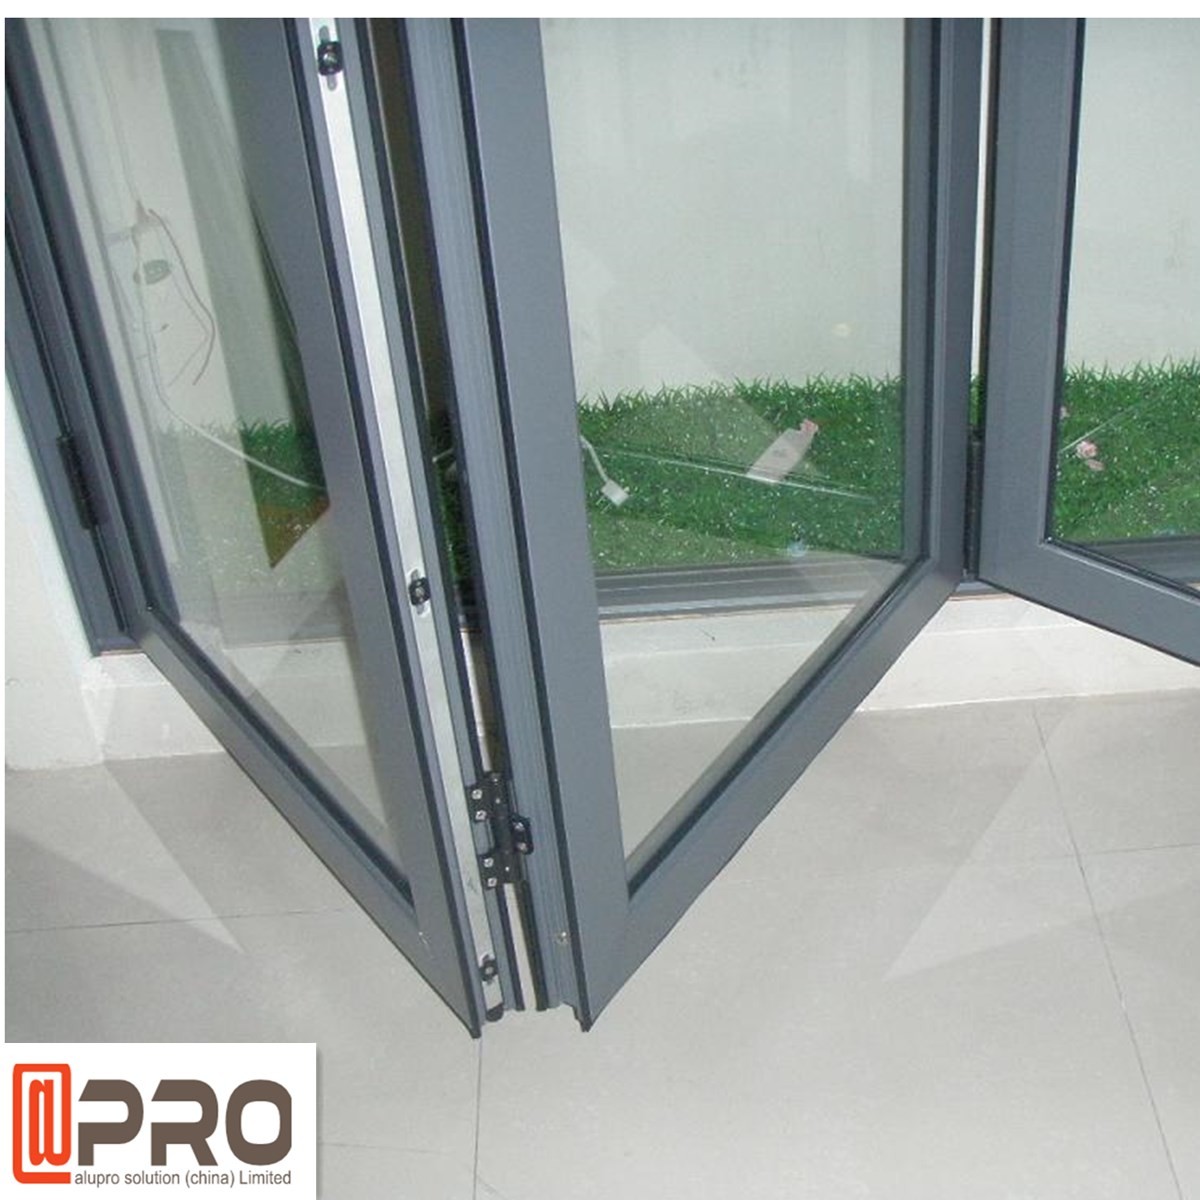 glass bi fold doors,double glass folding door,folding glass windows and doors,folding sliding patio doors